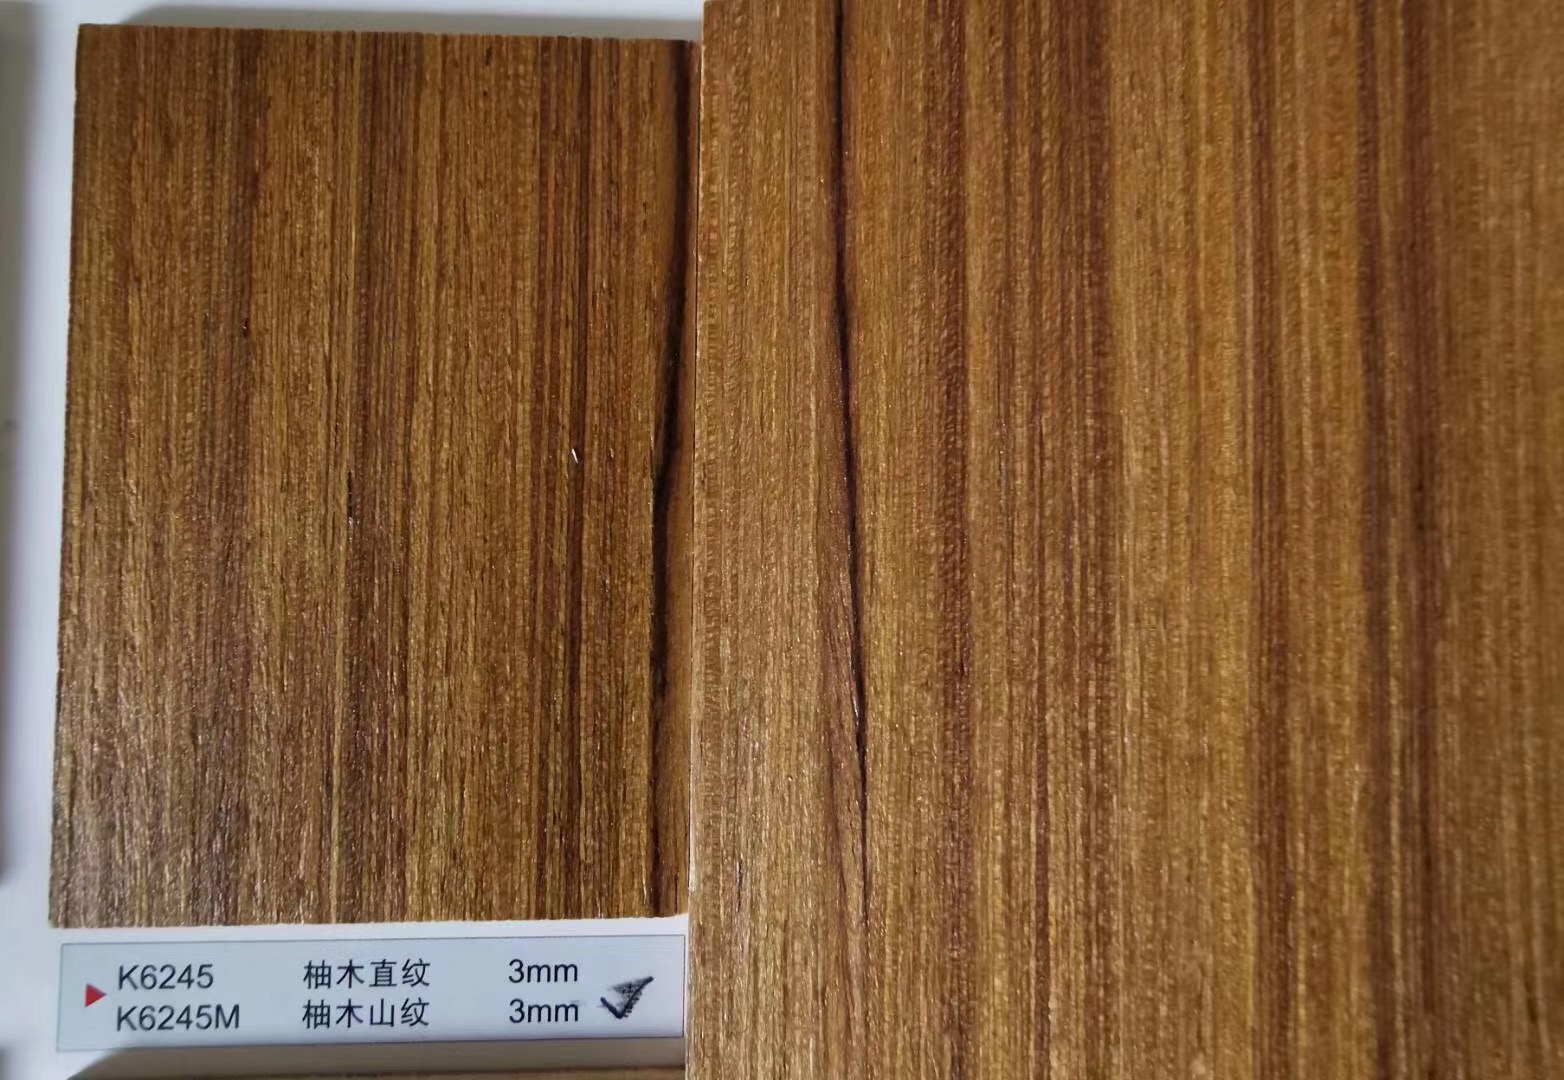 6245柚木直纹科技柚木饰面板科定板kd无锡木饰面厂家